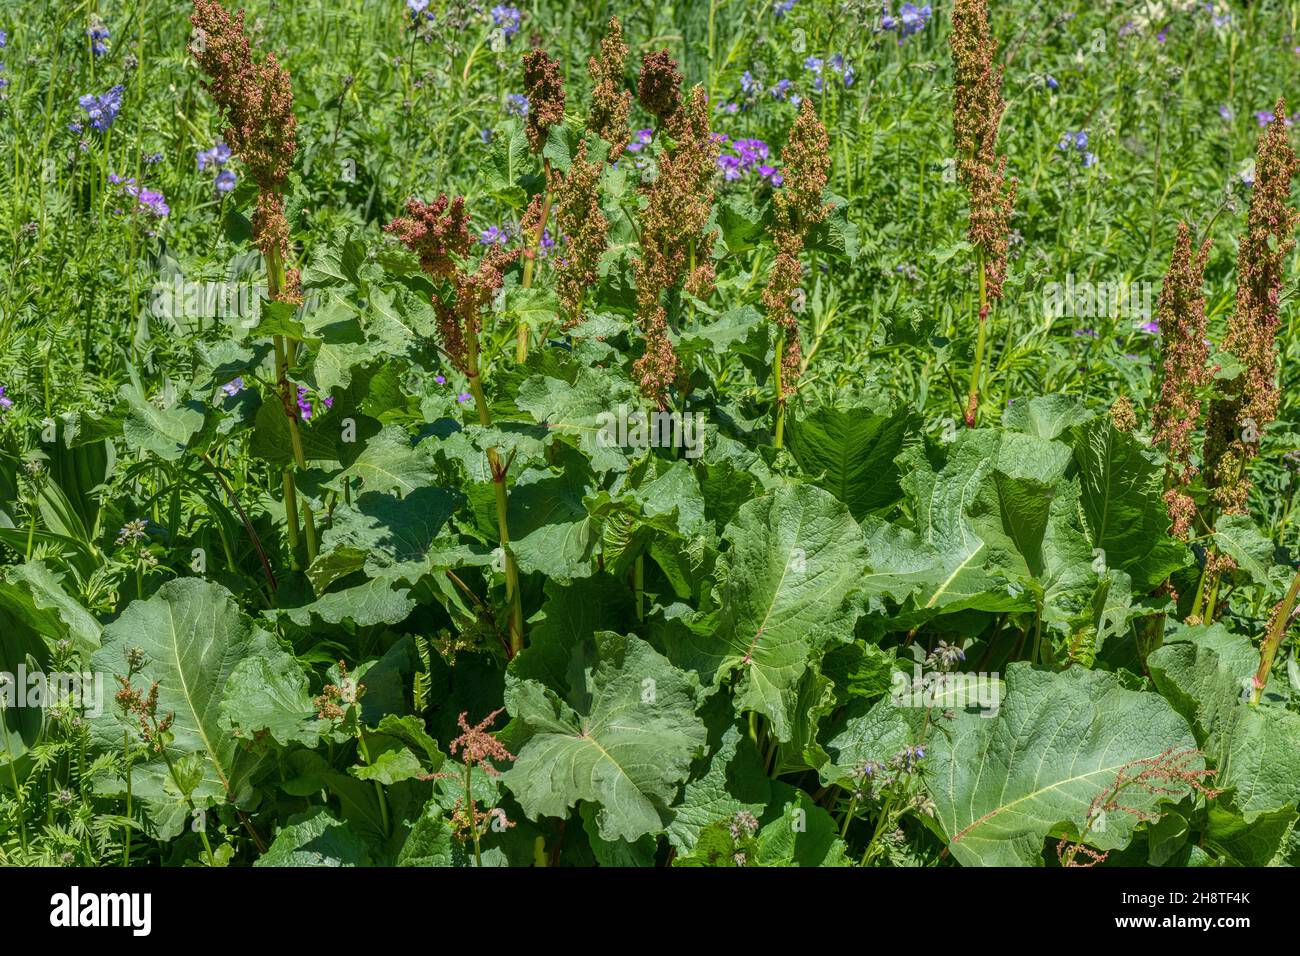 Mönchs-Rhabarber, Rumex alpinus in Blüte auf nährstoffreicher Alm. Stockfoto